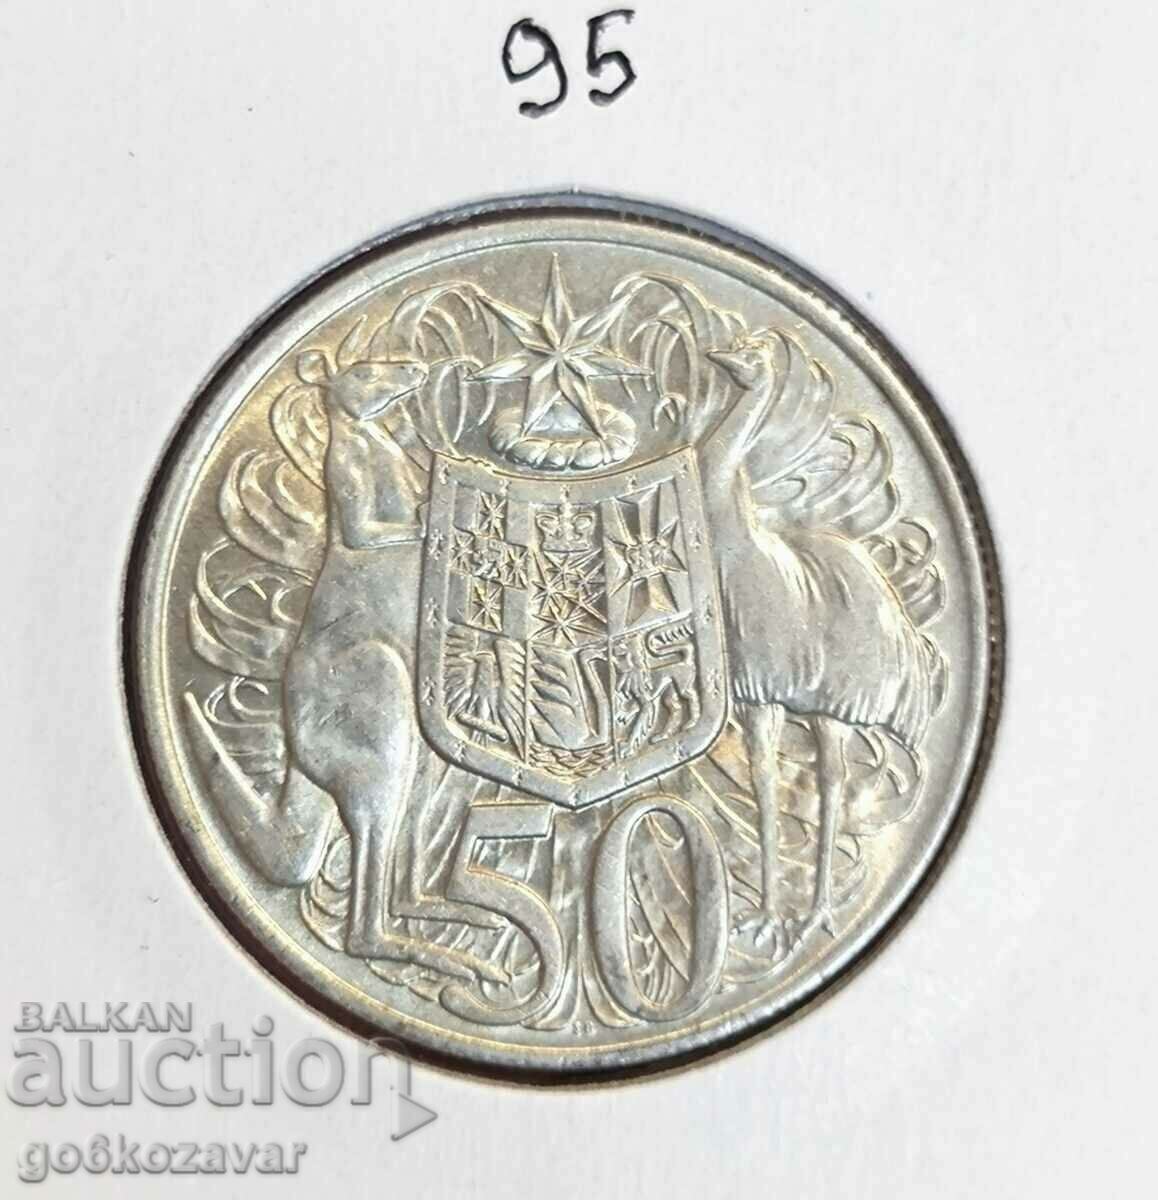 Australia 50 Centi 1966 Argint UNC